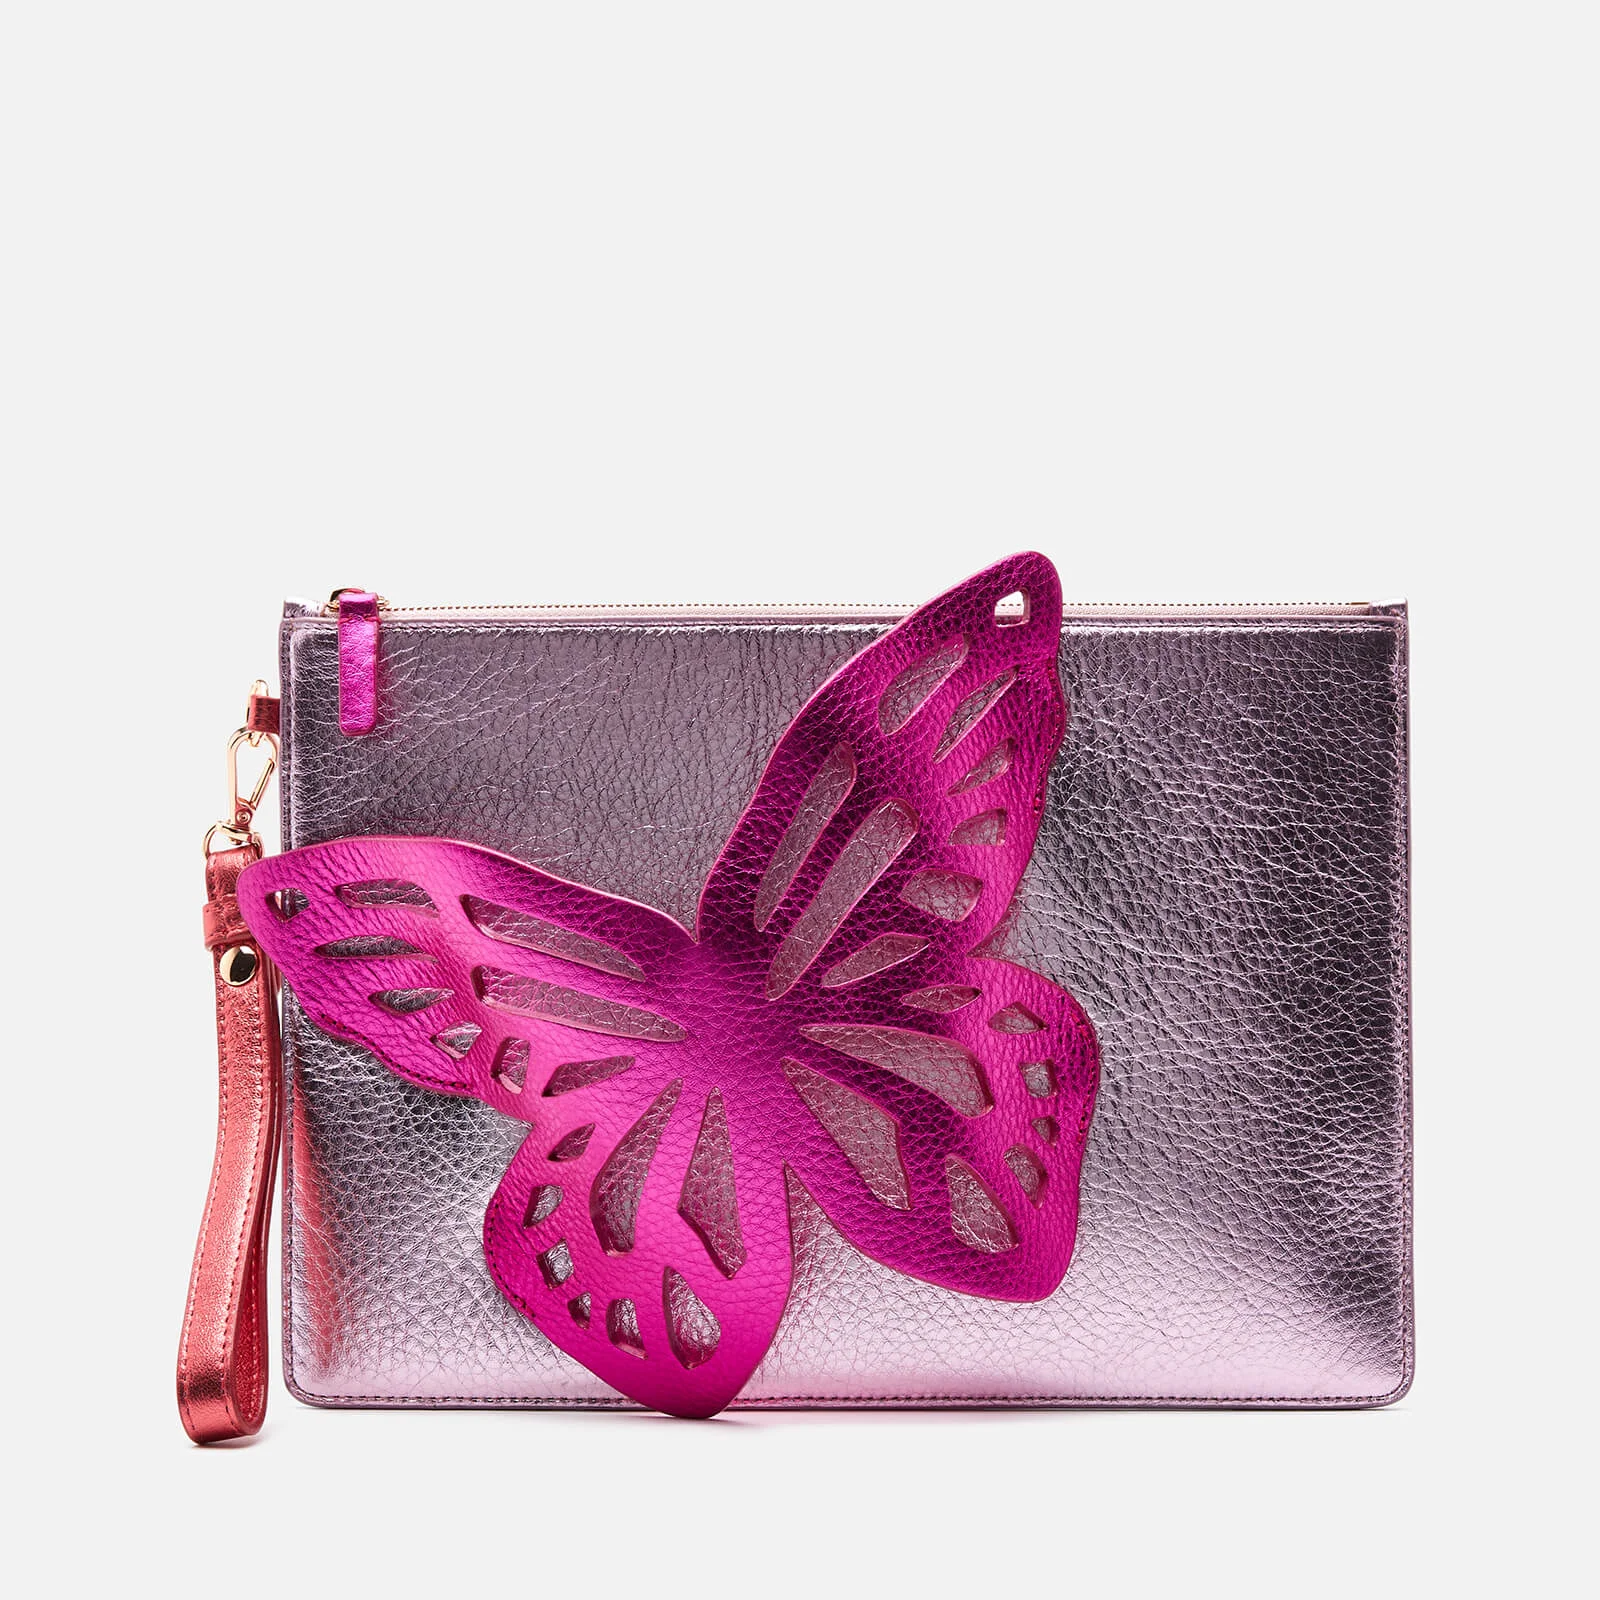 Sophia Webster Women's Flossy Butterfly Pouchette - Pink Image 1